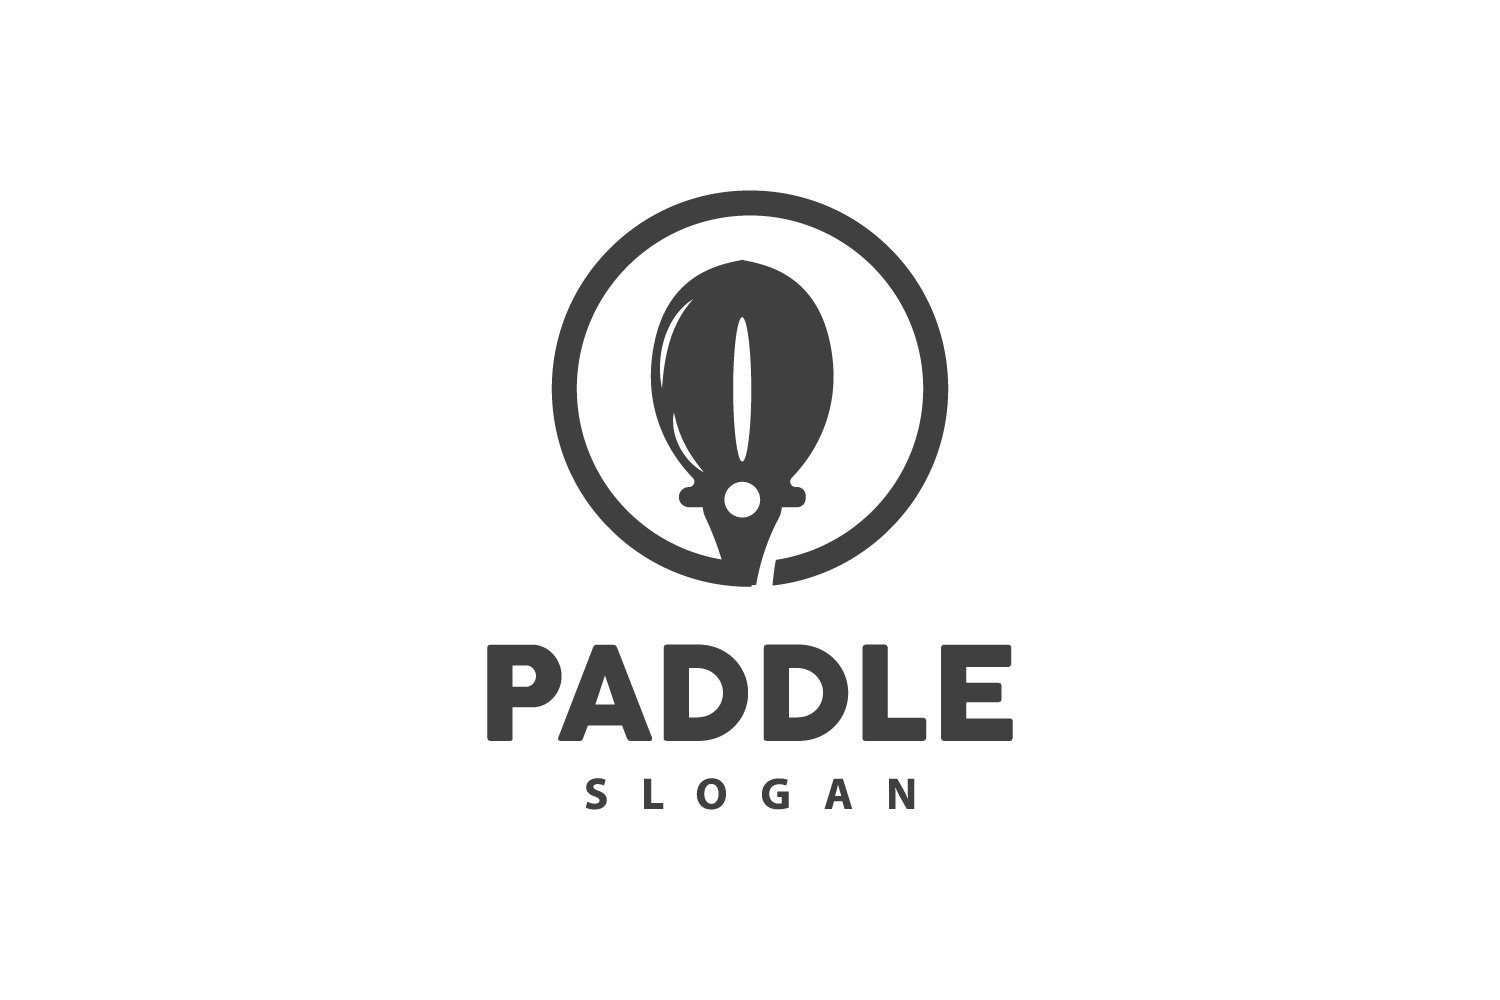 Paddle Logo Boat Design Vector Illustration DesignV17